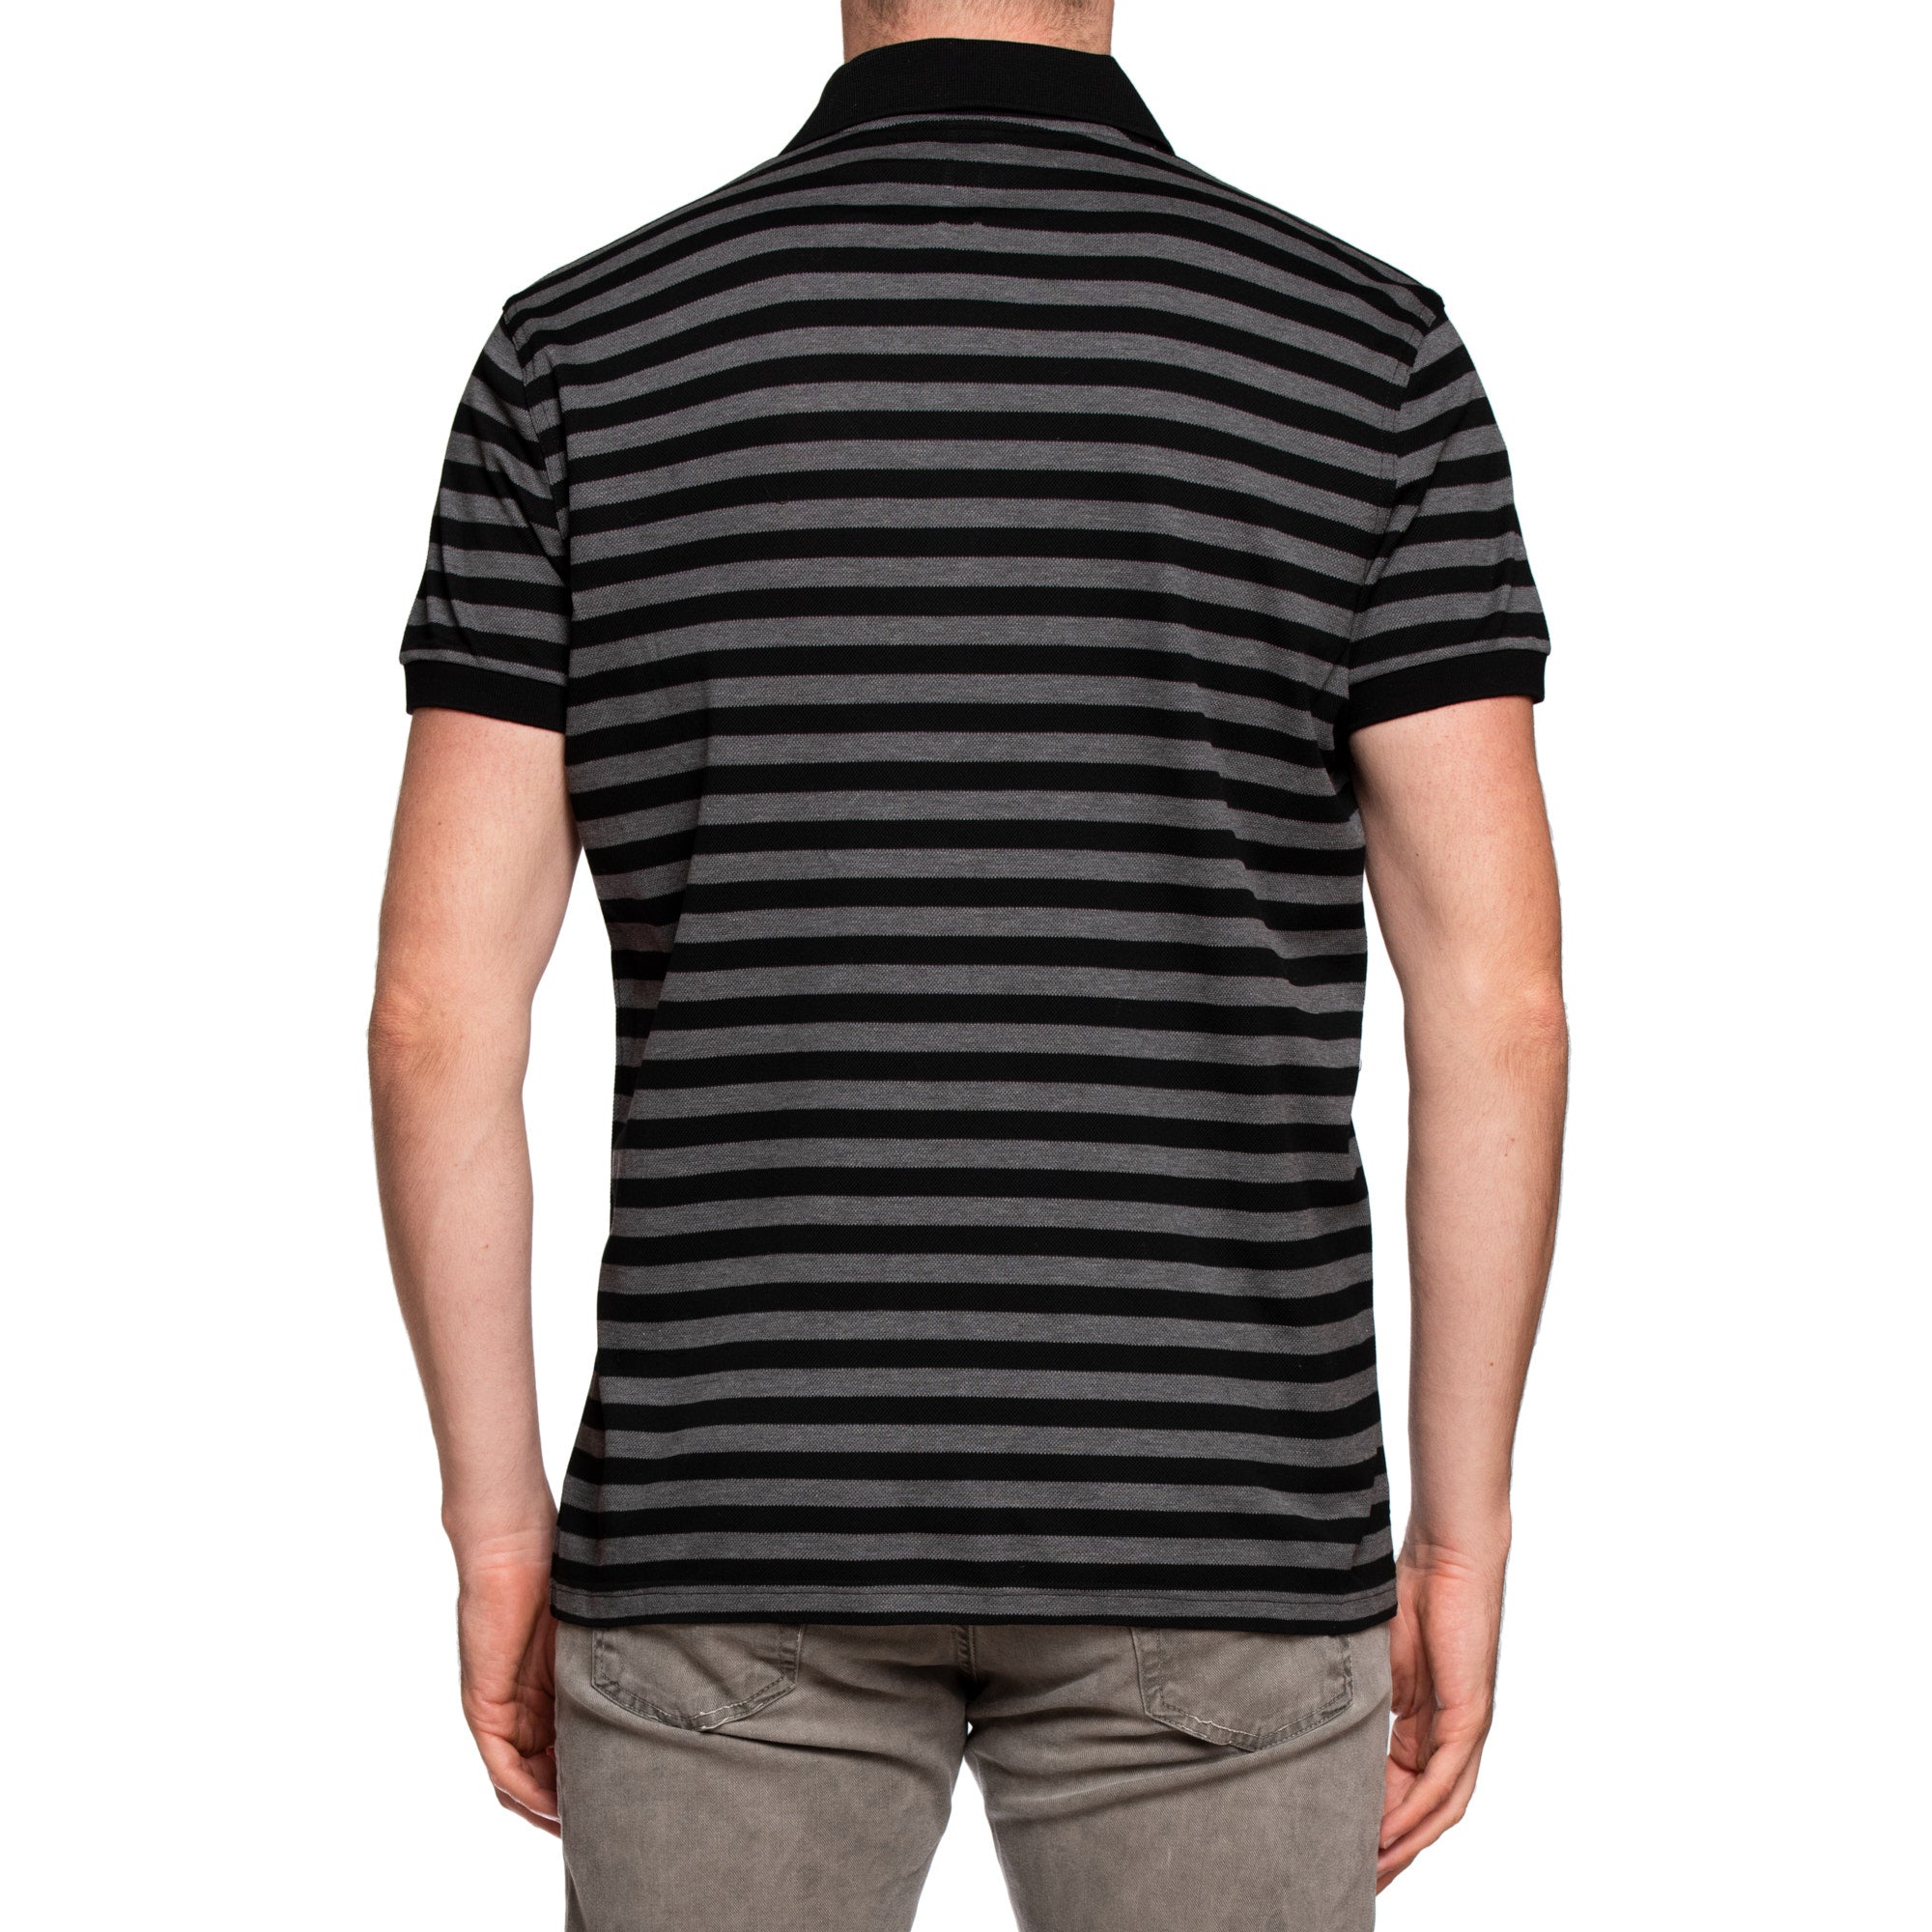 SAINT LAURENT PARIS Black-Gray Striped Pique Cotton Polo Shirt NEW XL Slim Fit SAINT LAURENT PARIS